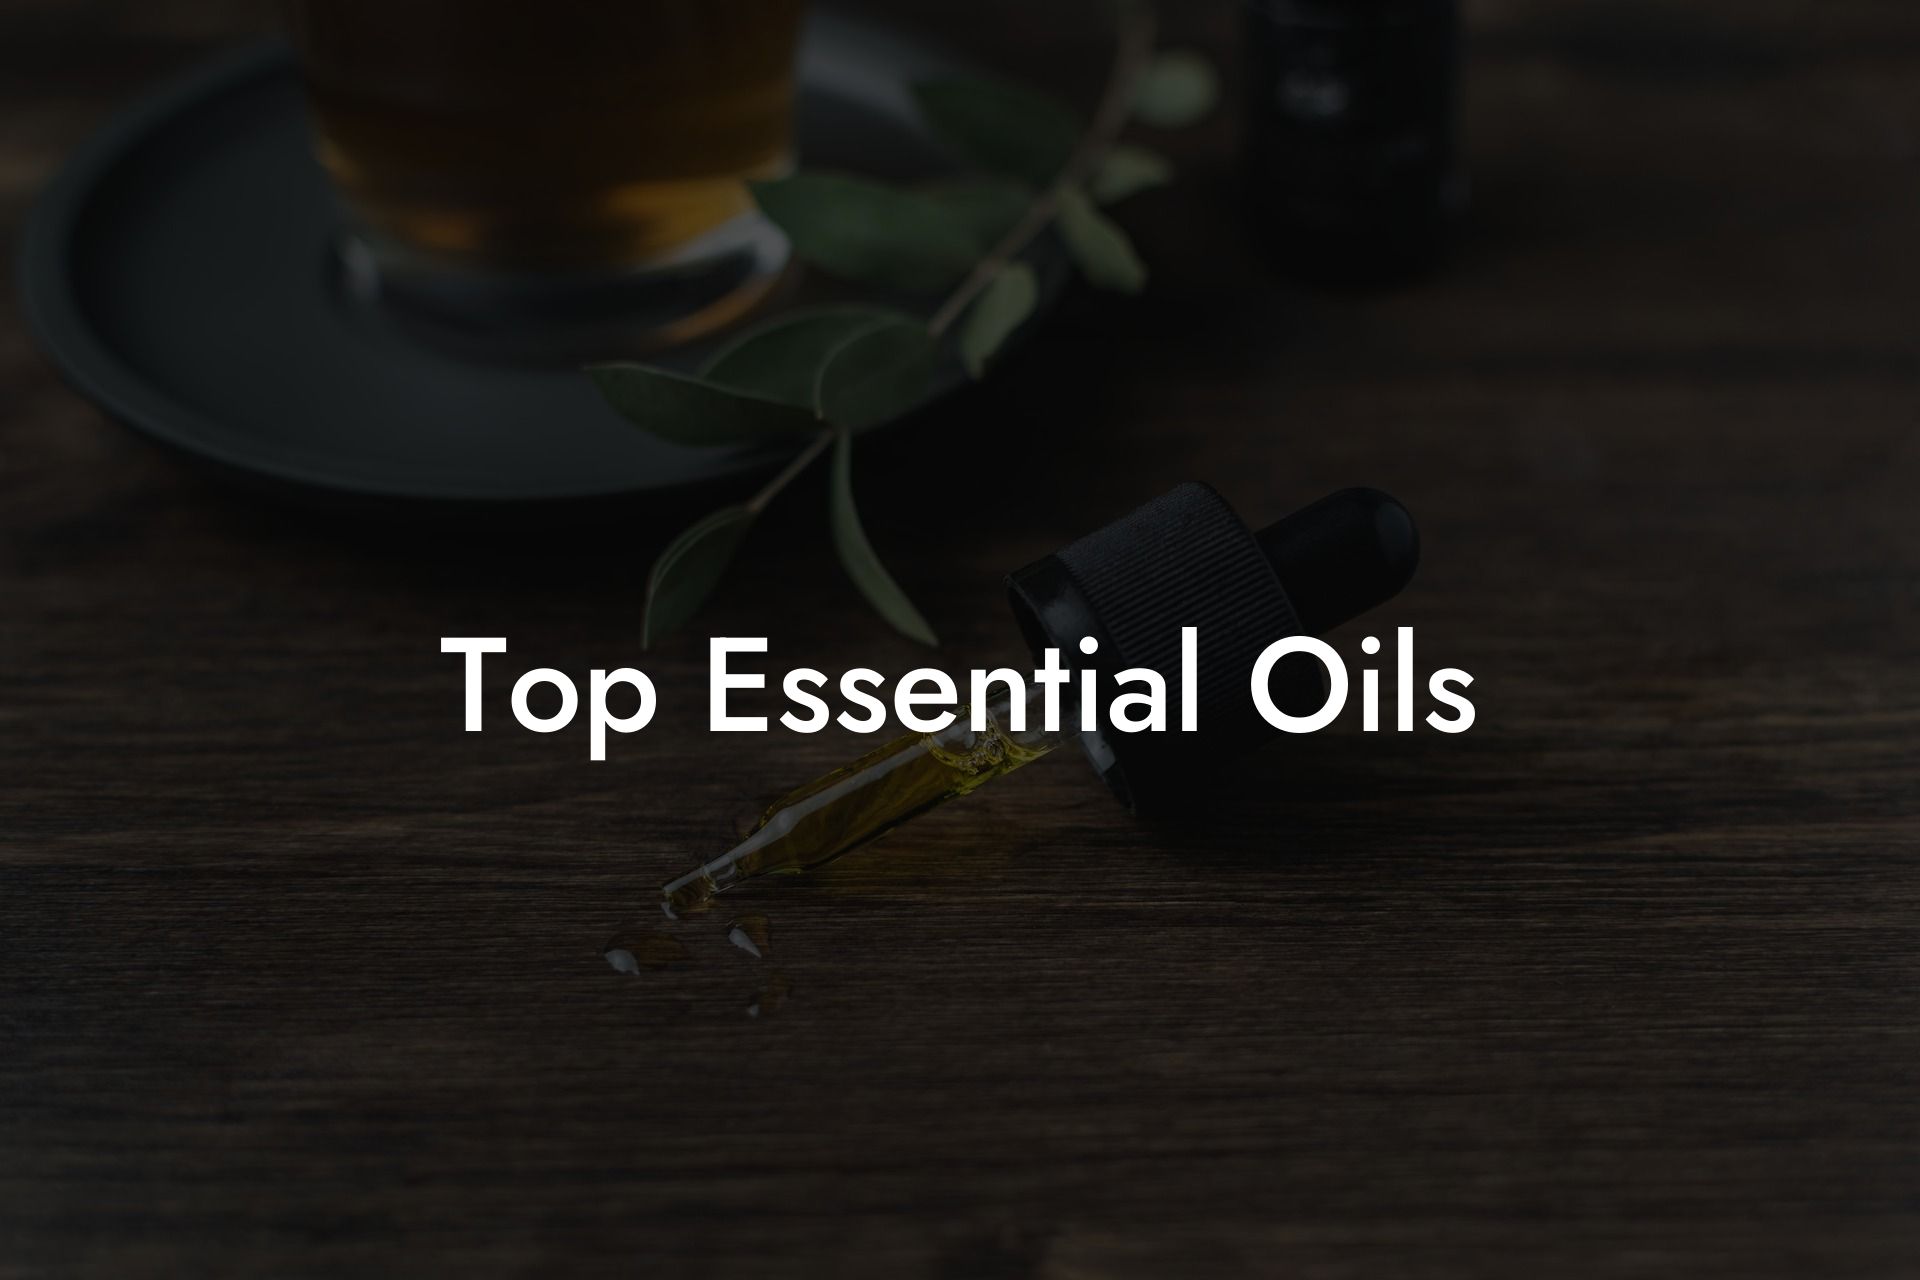 Top Essential Oils